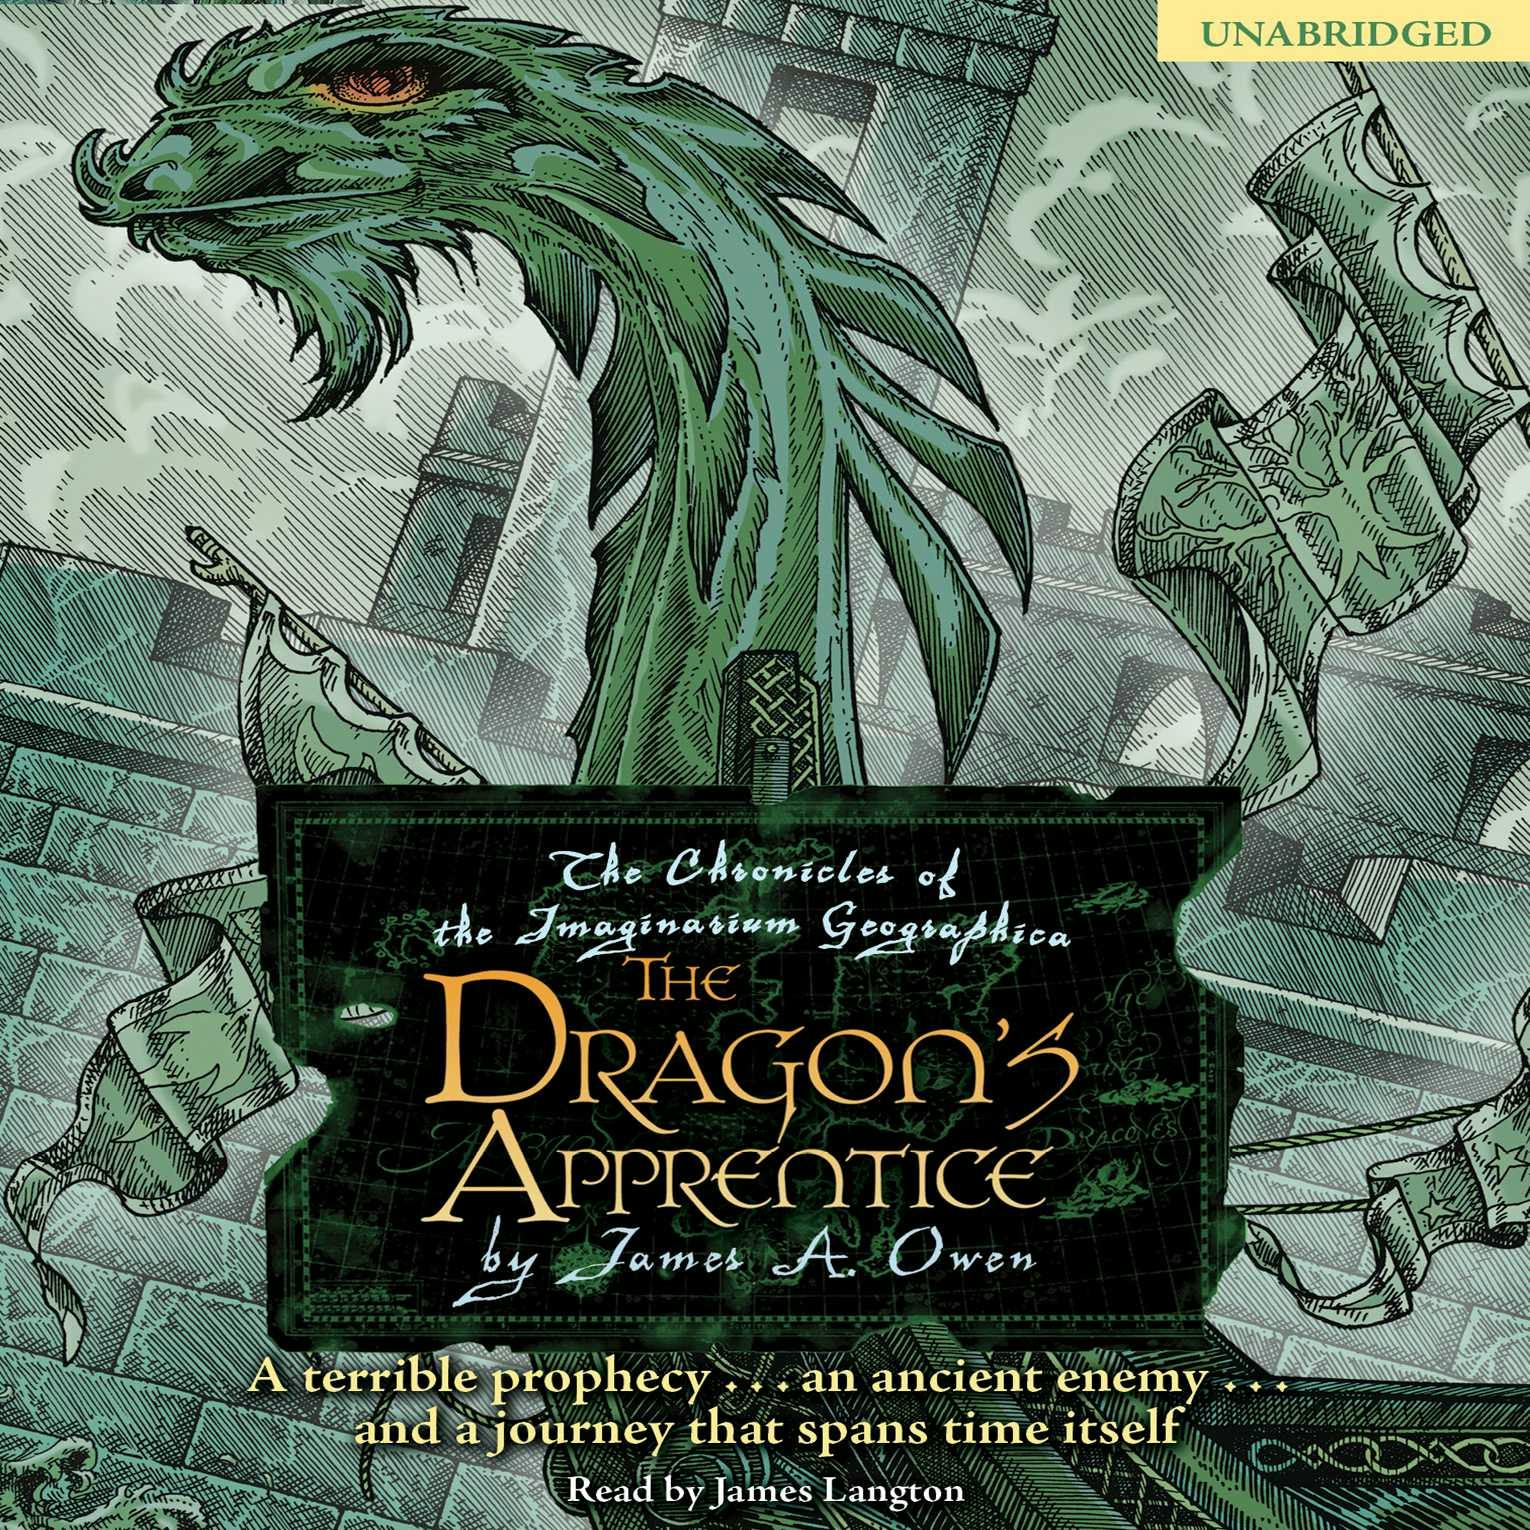 The Dragon's Apprentice - James A. Owen